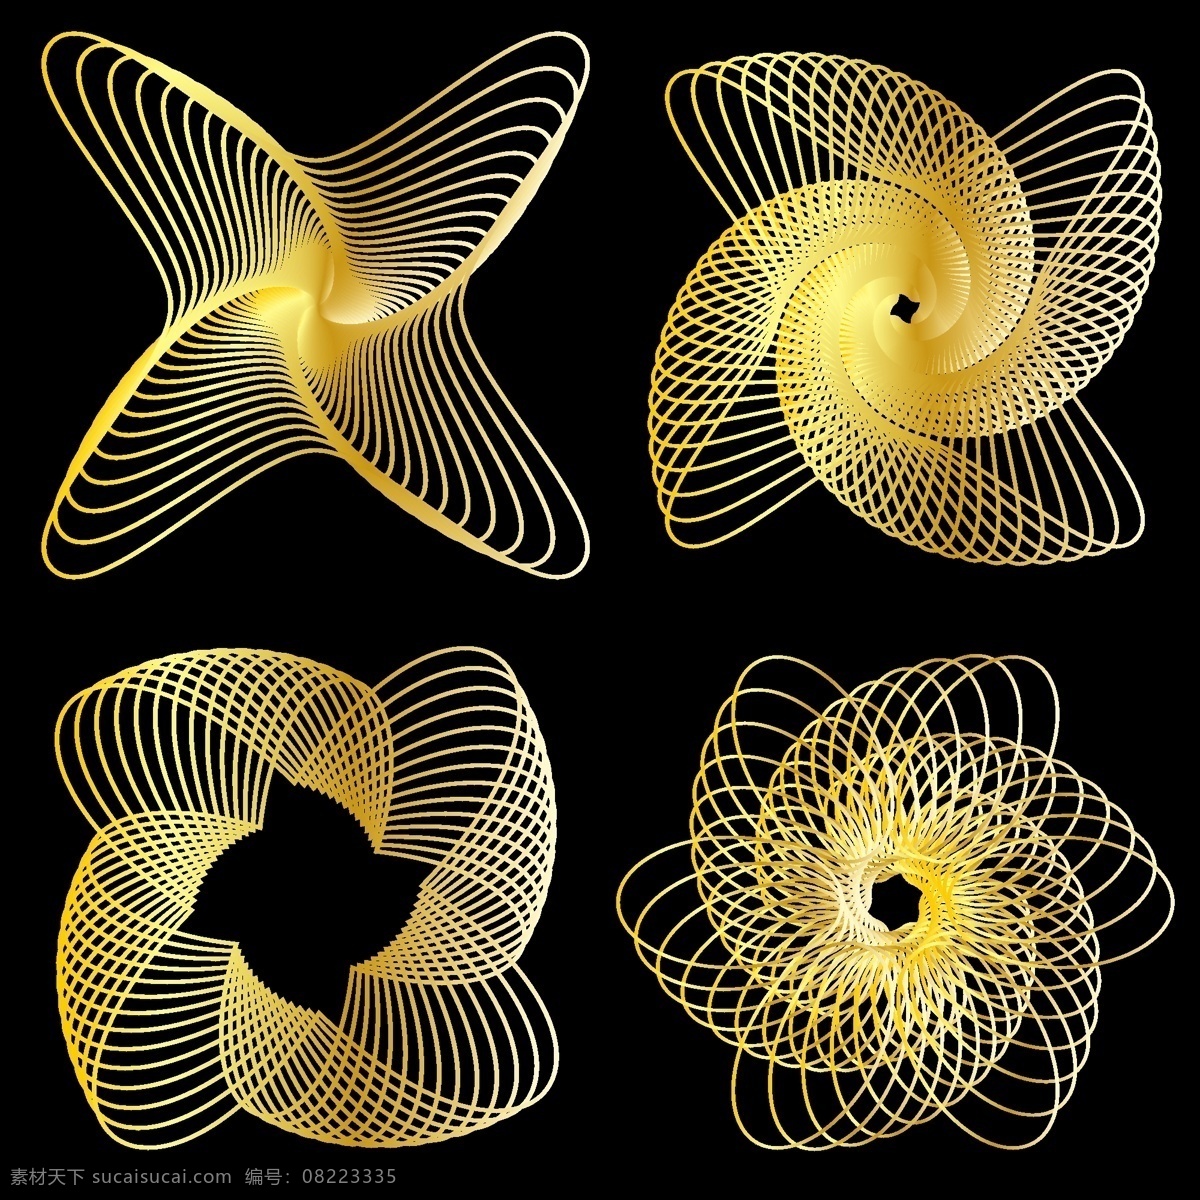 旋转 螺旋 图案 矢量 旋转的螺旋 螺旋图案 安全 模式 花纹 艺术 自由 矢量图 花纹花边